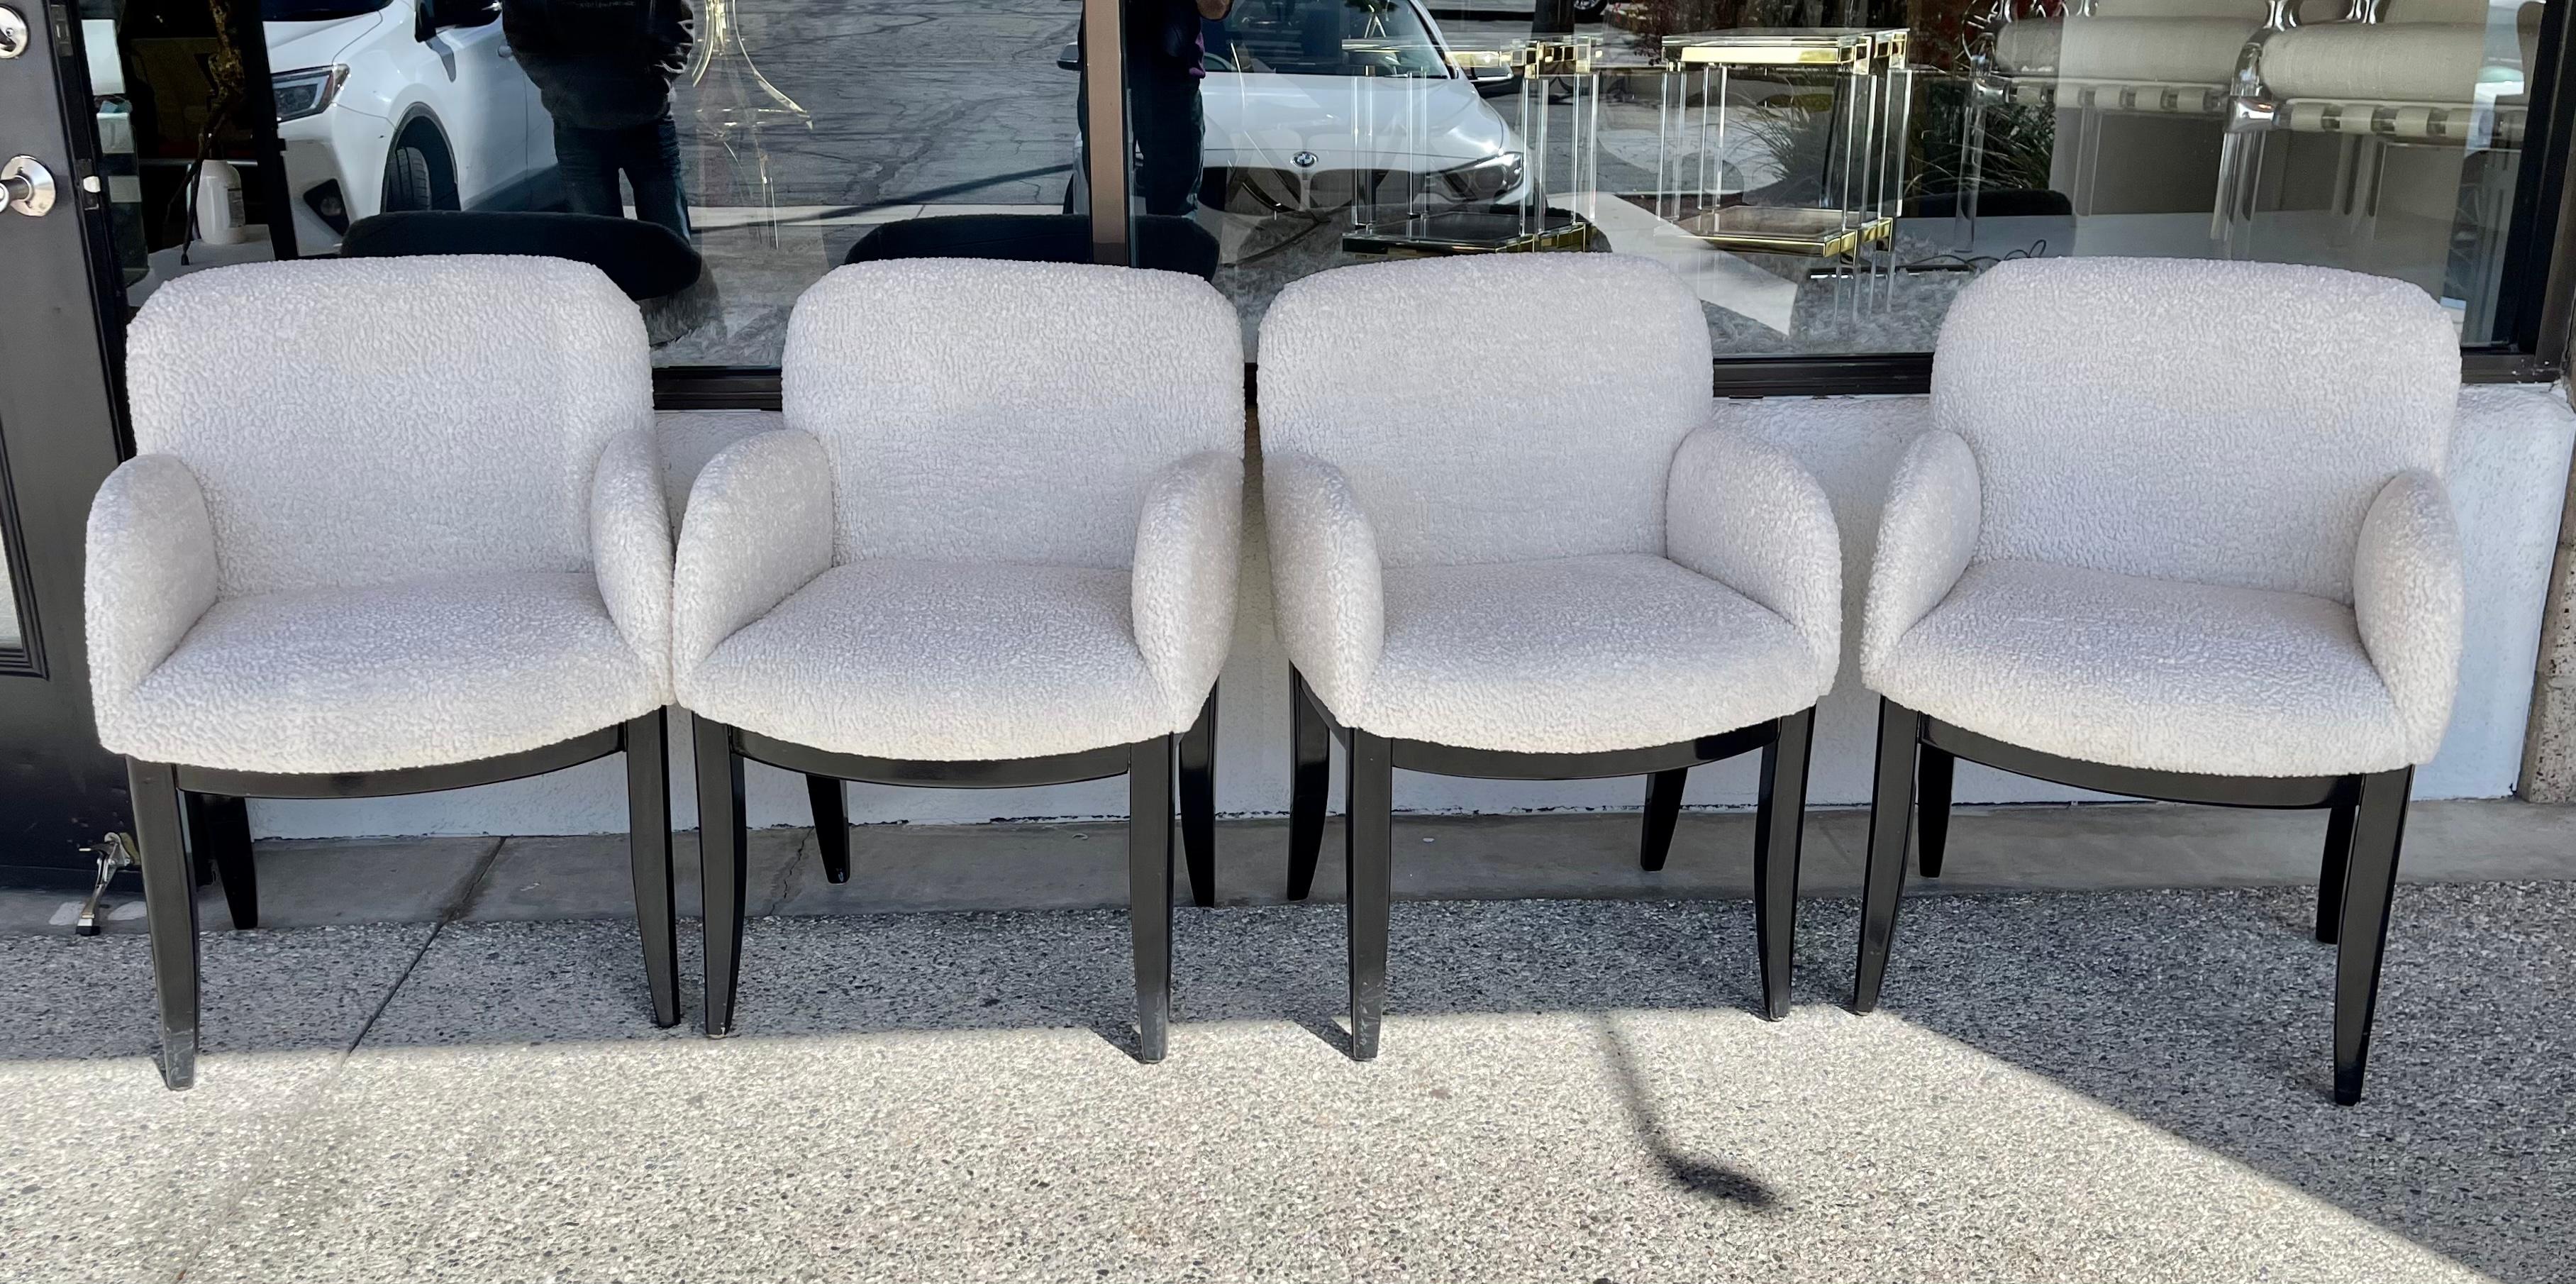 Un ensemble de 4 chaises de salle à manger conçu par Milo Baughman pour Thayer Coggin. Ils ont été retapissés dans un tissu synthétique nubby italien en fausse peau de mouton. Les pattes sont d'un noir brillant. Ils portent tous l'étiquette Thayer